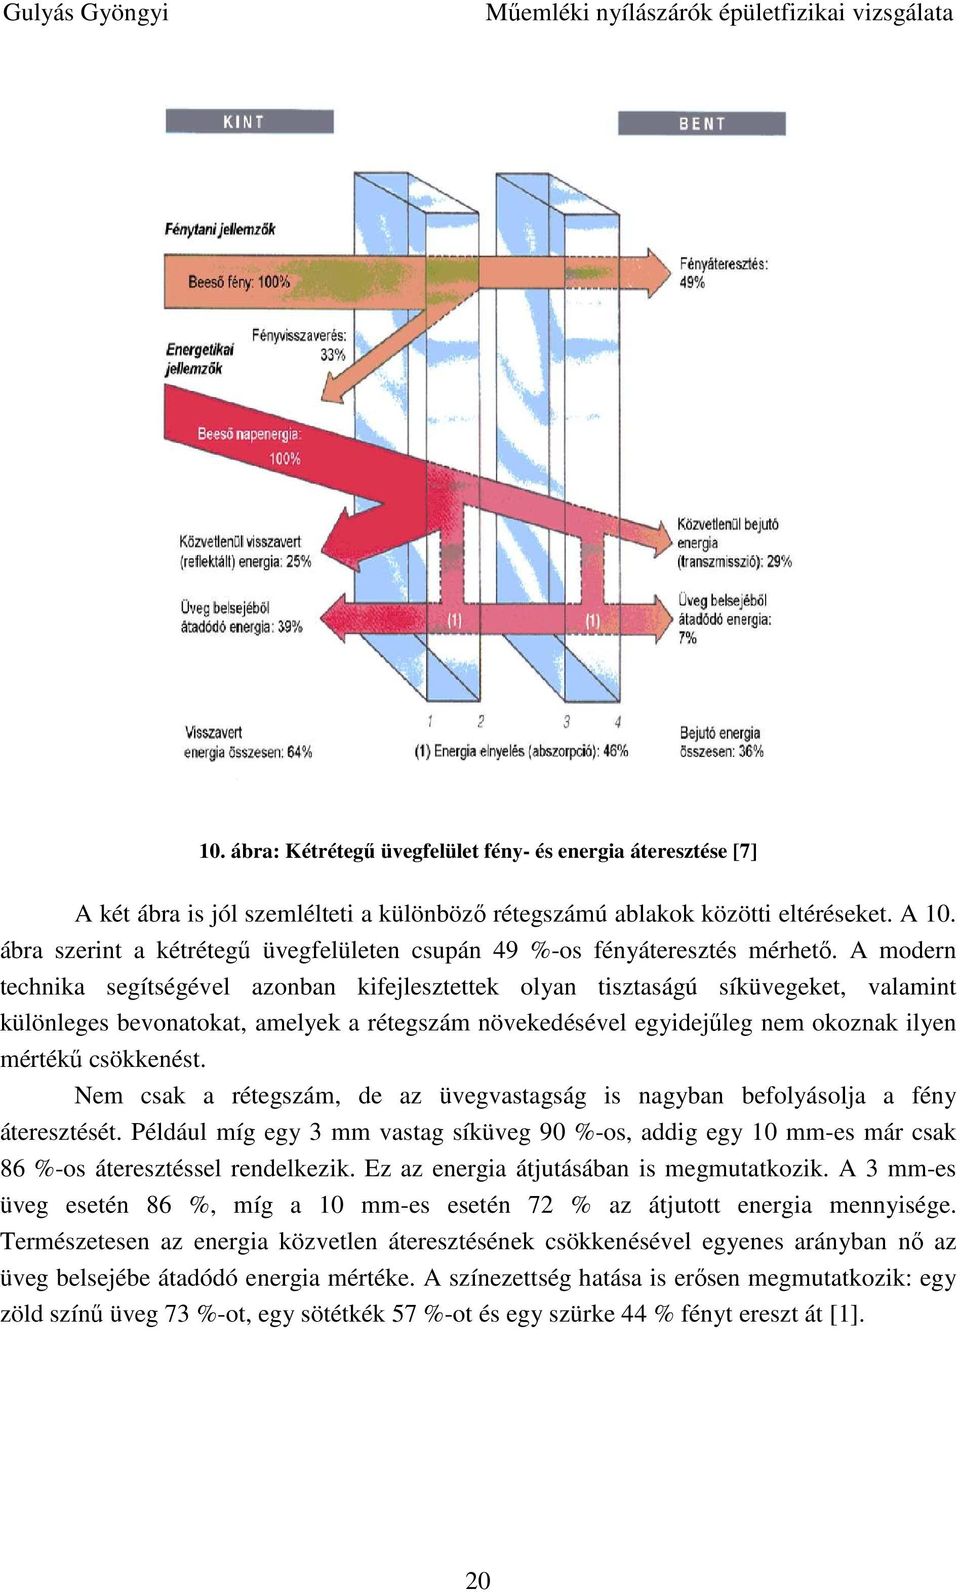 Mőemléki nyílászárók épületfizikai vizsgálata - PDF Ingyenes letöltés